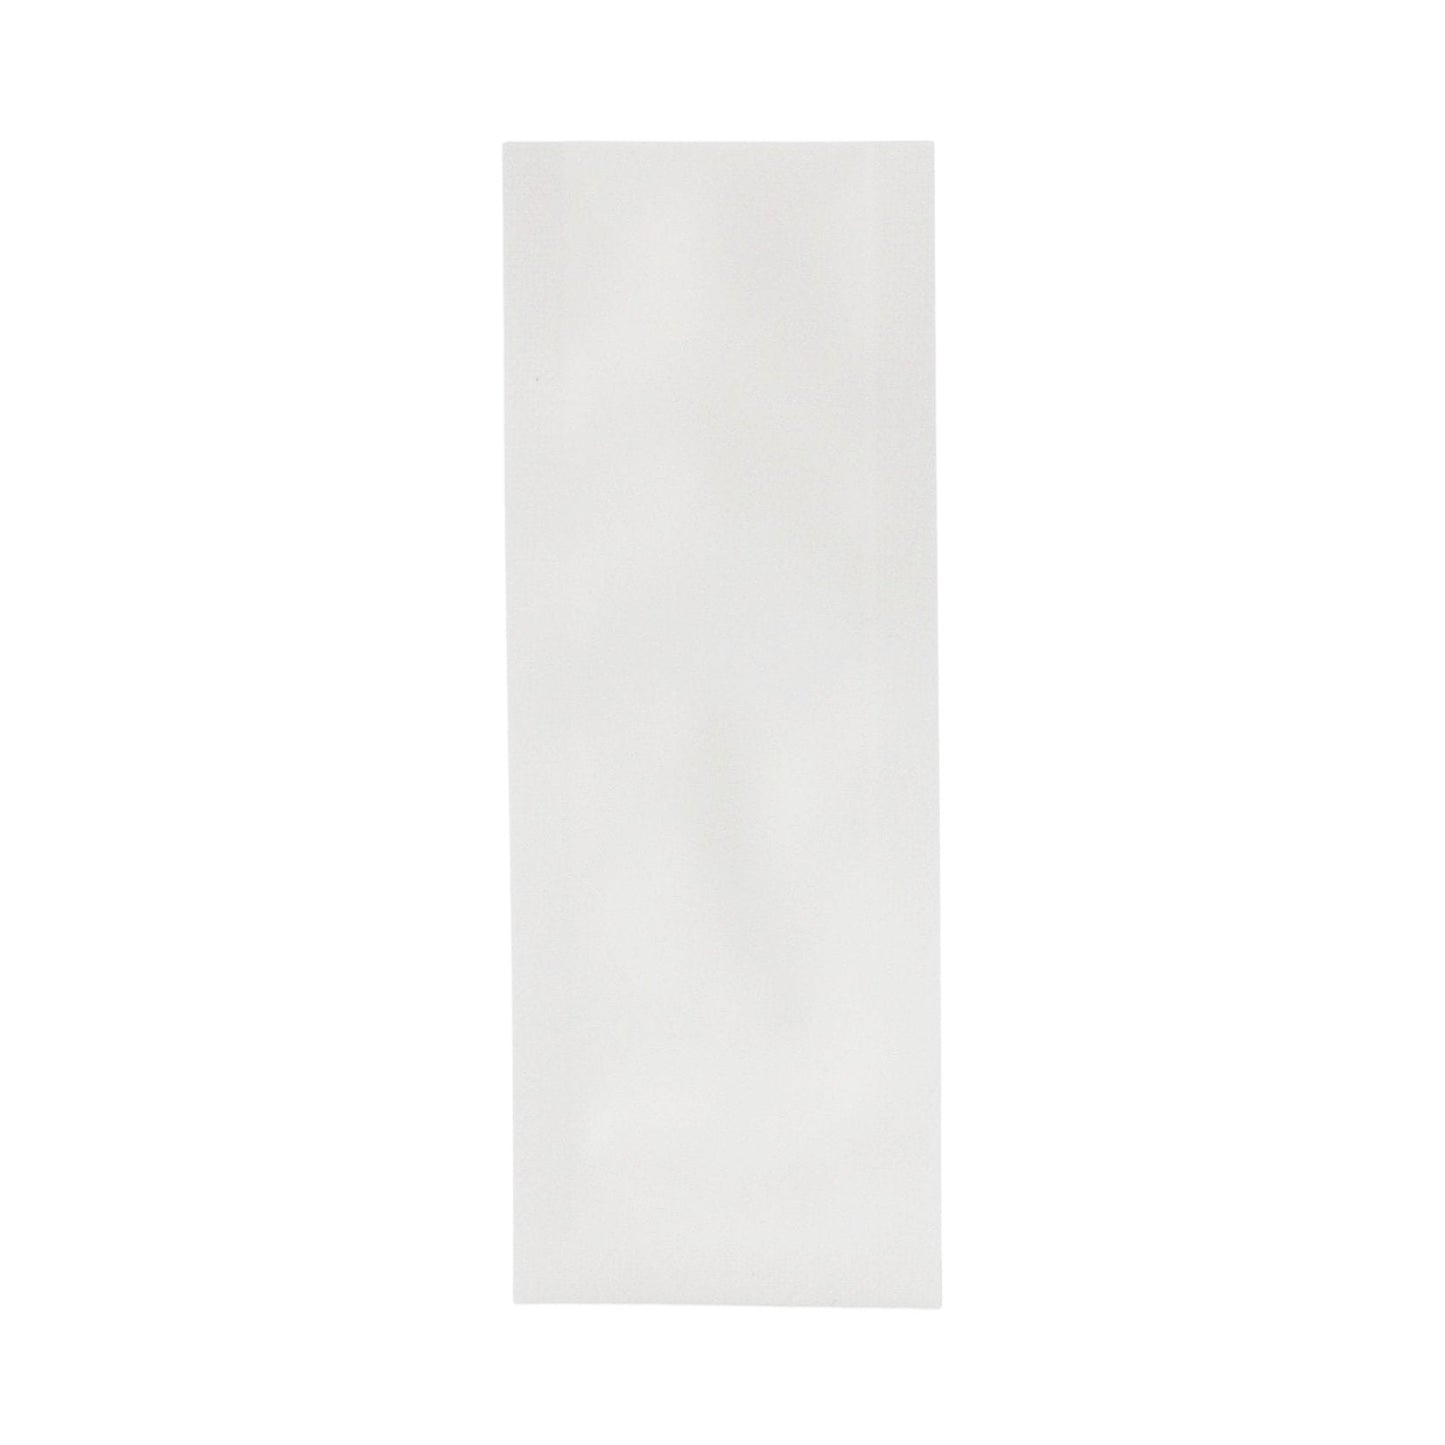 Matte White Bag King Single Use Heat Seal Mylar Bag | 1.5 x 4 in